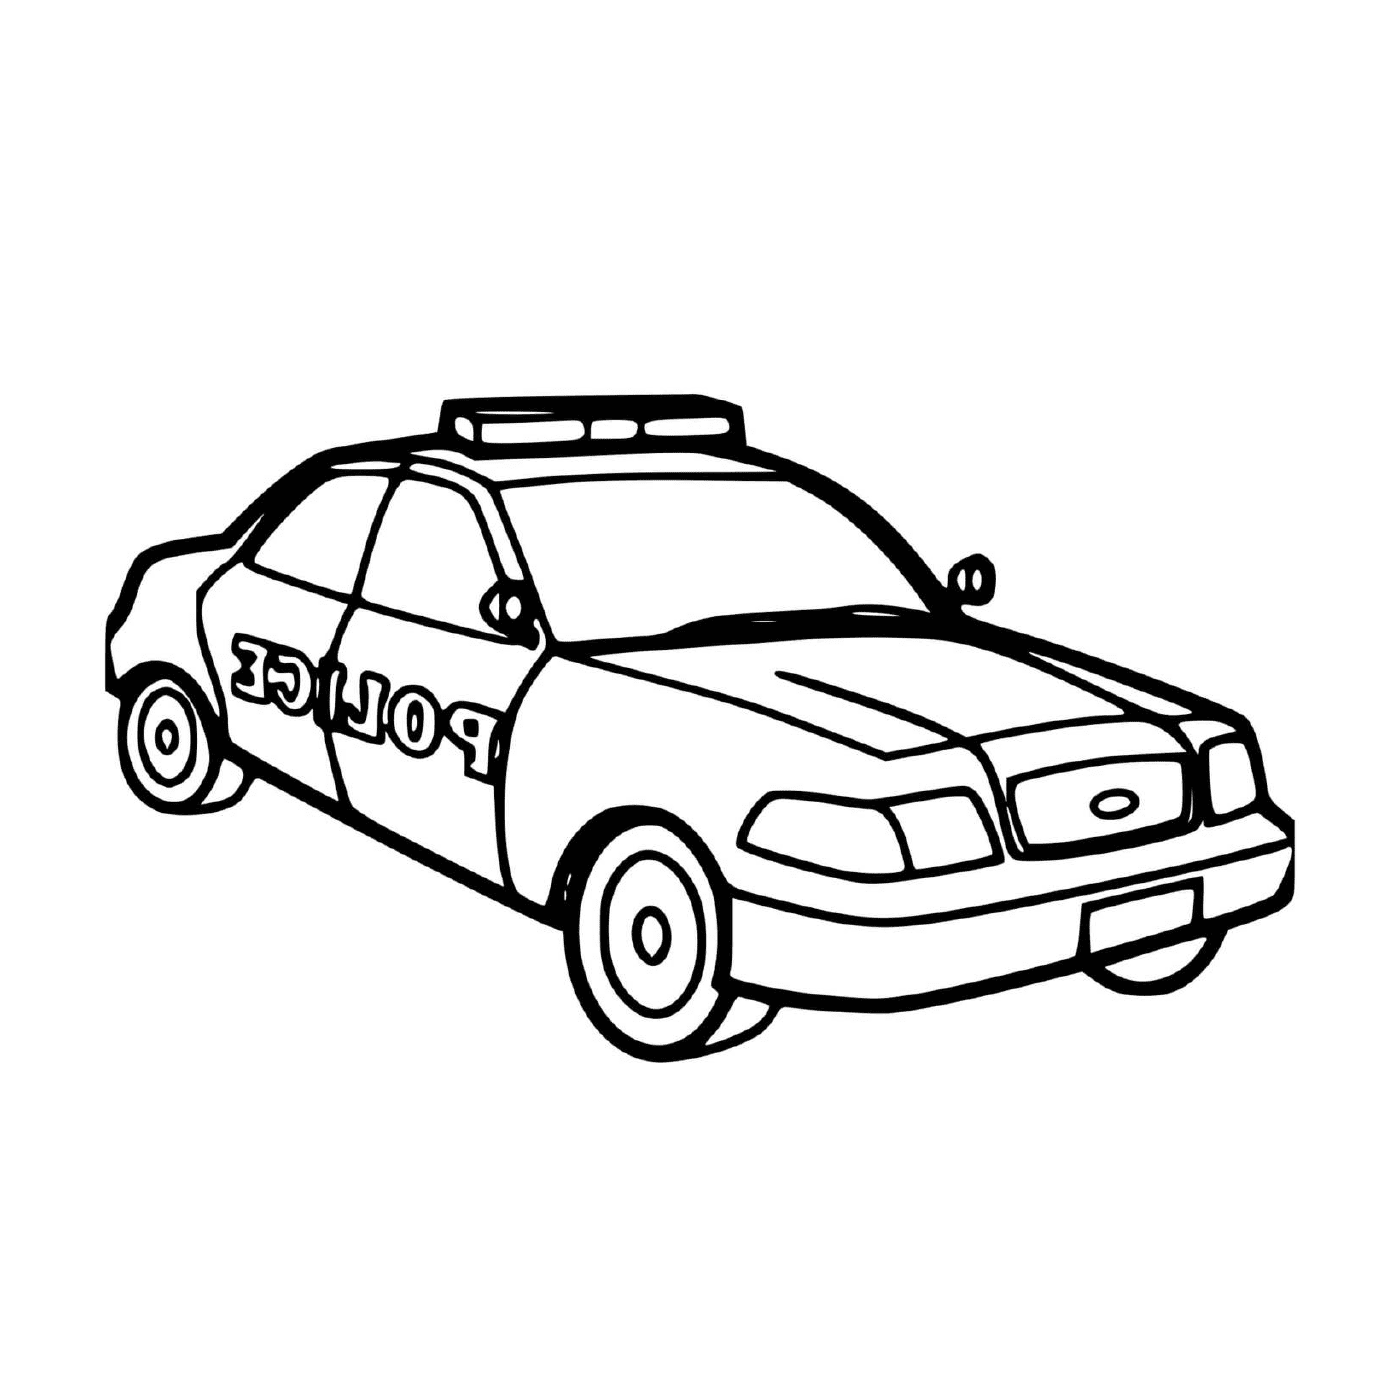  Madre auto, polizia degli Stati Uniti 